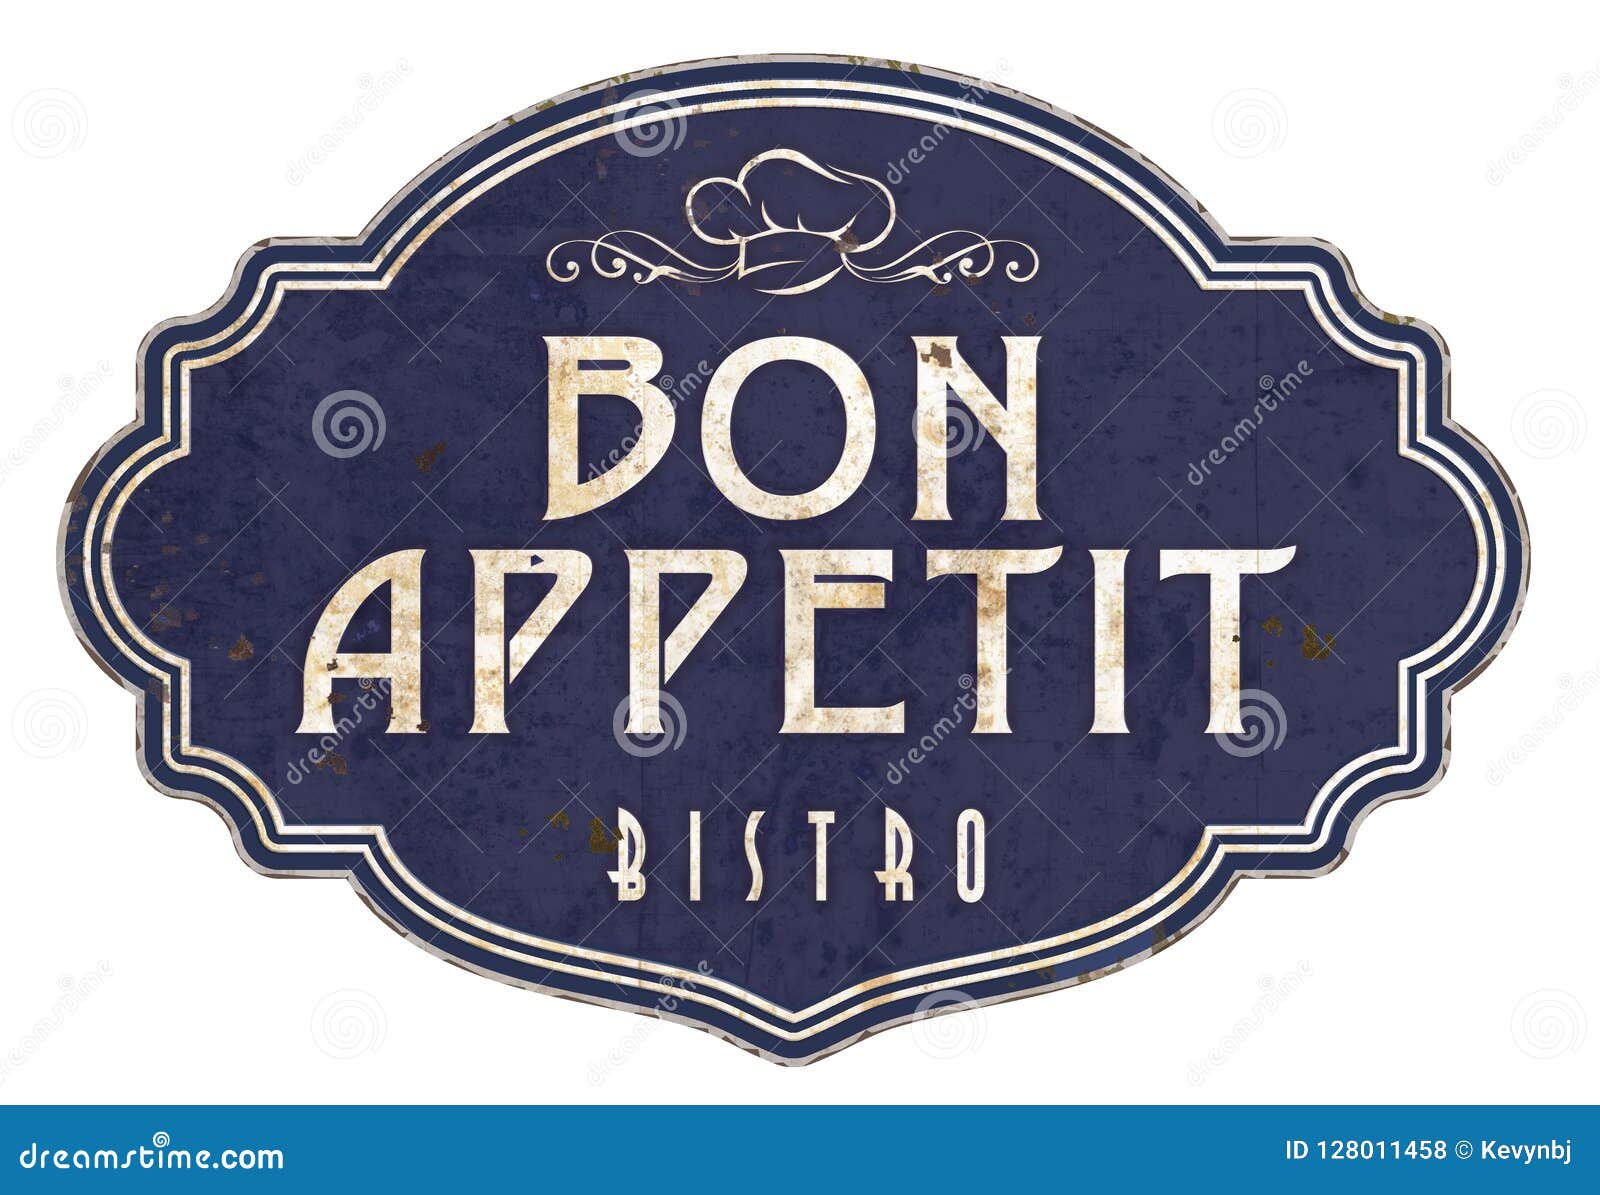 bon appetit kitchen sign plaque victorian enamel bistro